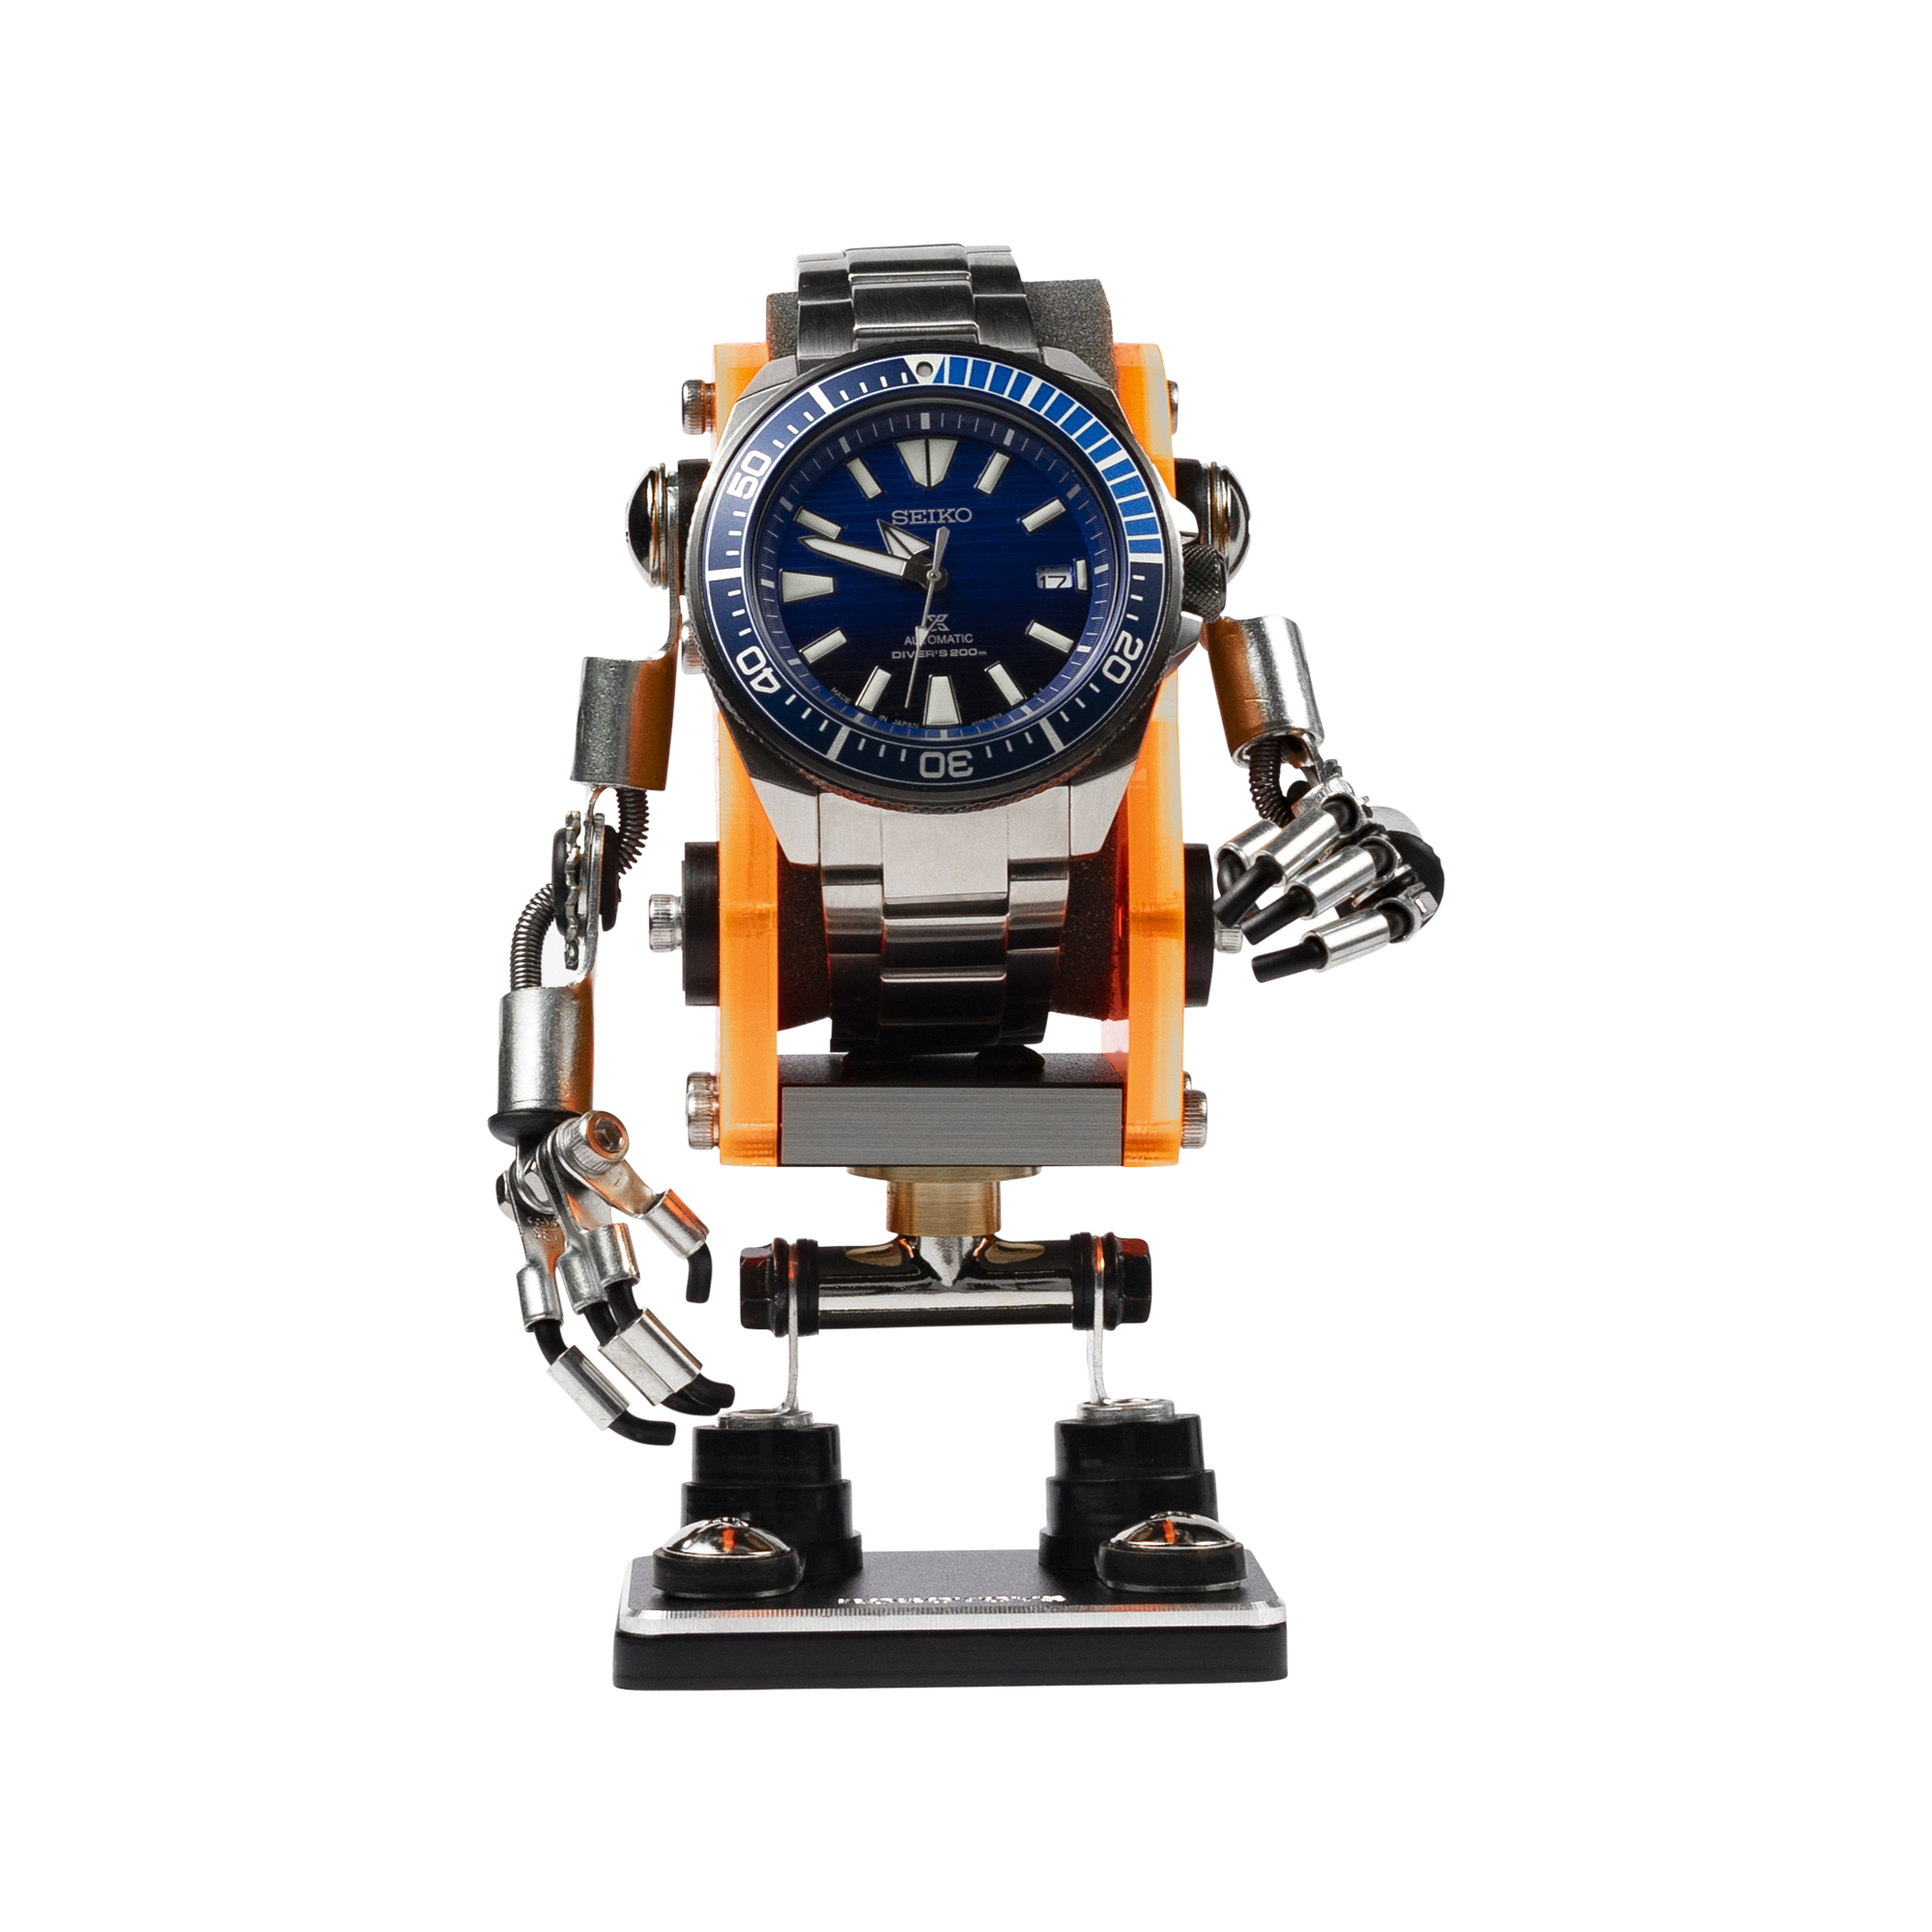 [RoboToys] Watch Stand - Minibot - Neon Orange